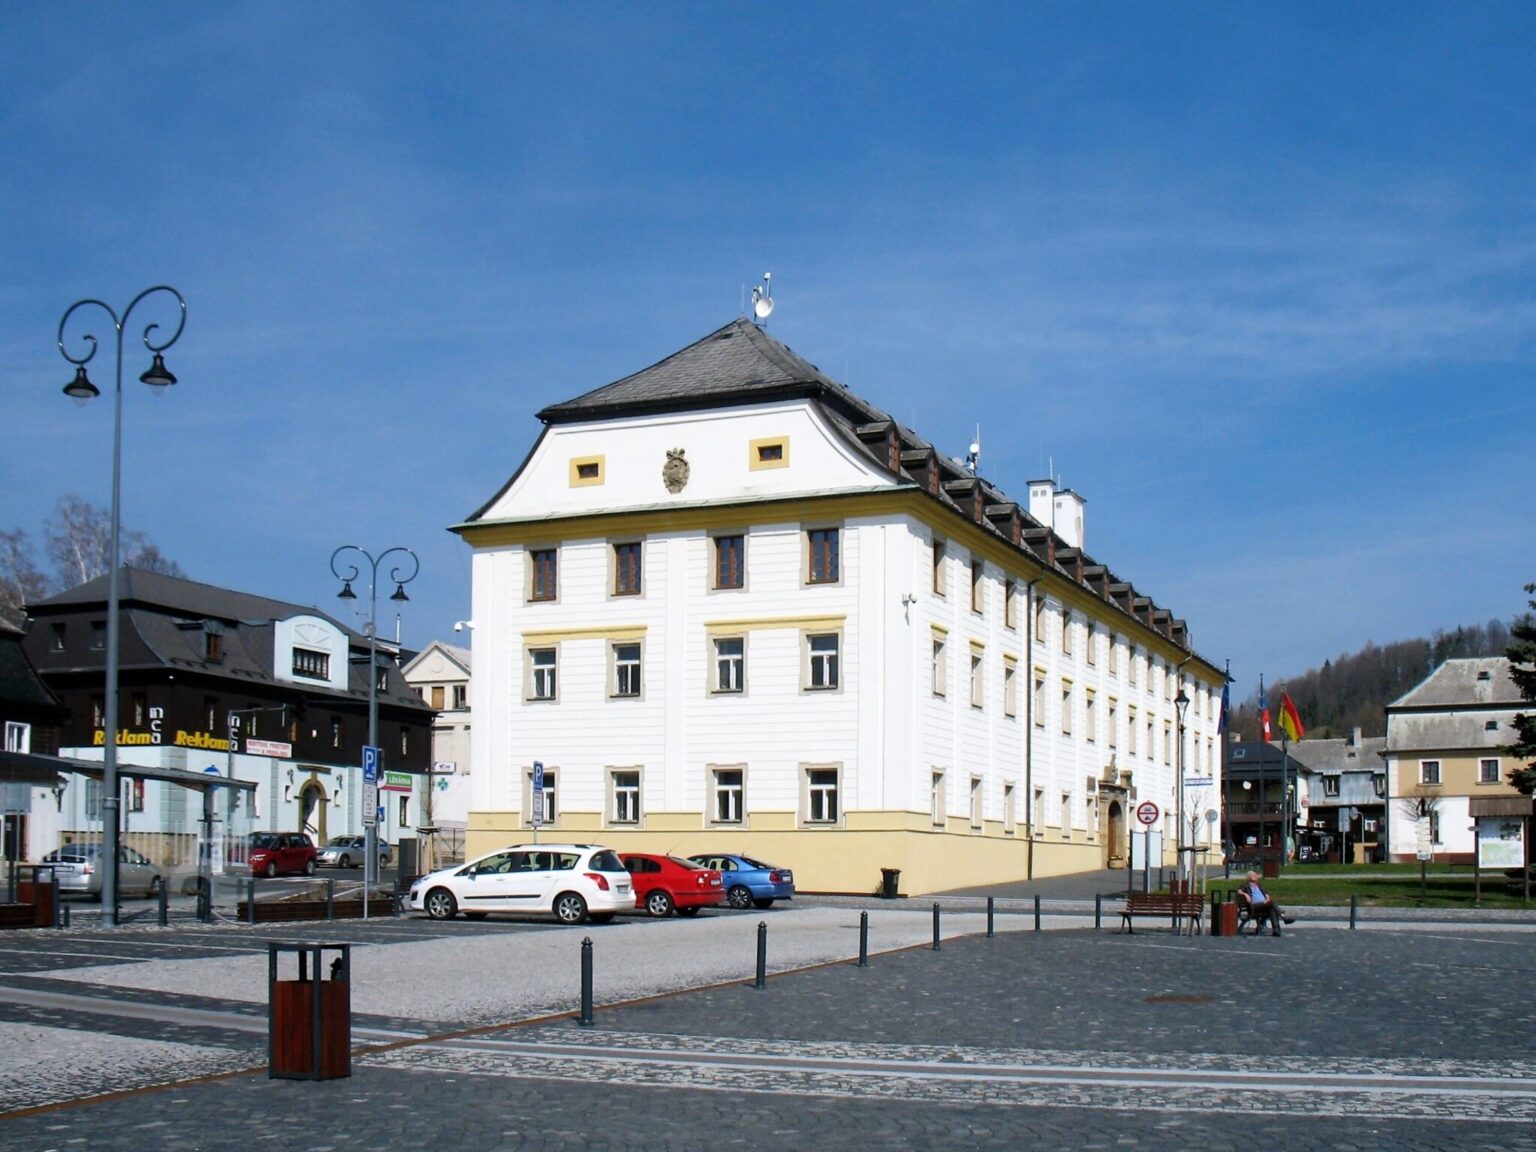 Radnice v Novém Boru. Zdroj: Marie Čcheidzeová, Wikimedia